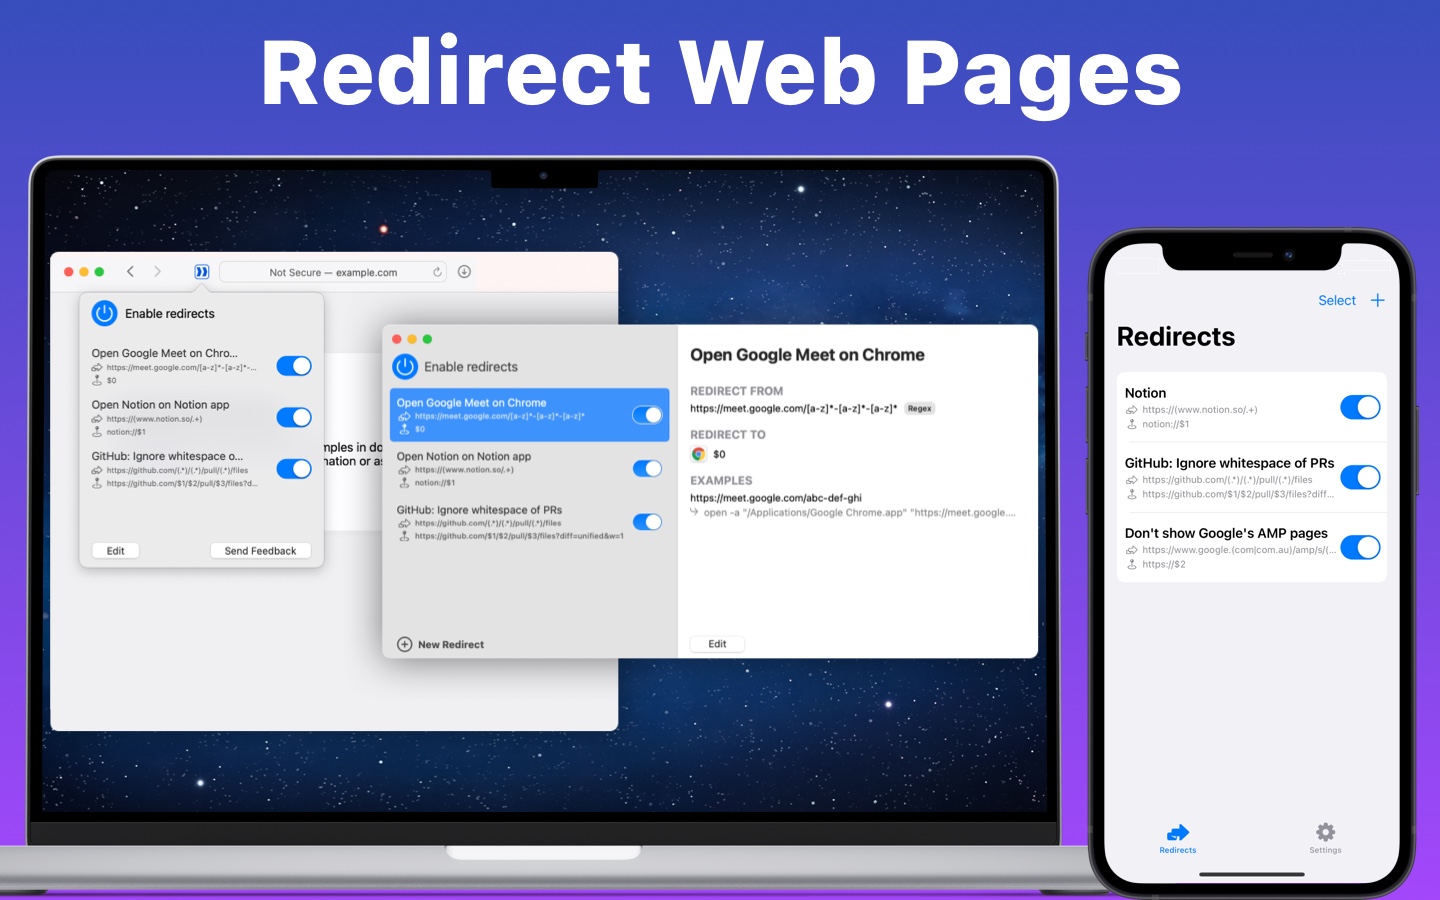 Thumbnail of "Redirect Web for Safari"